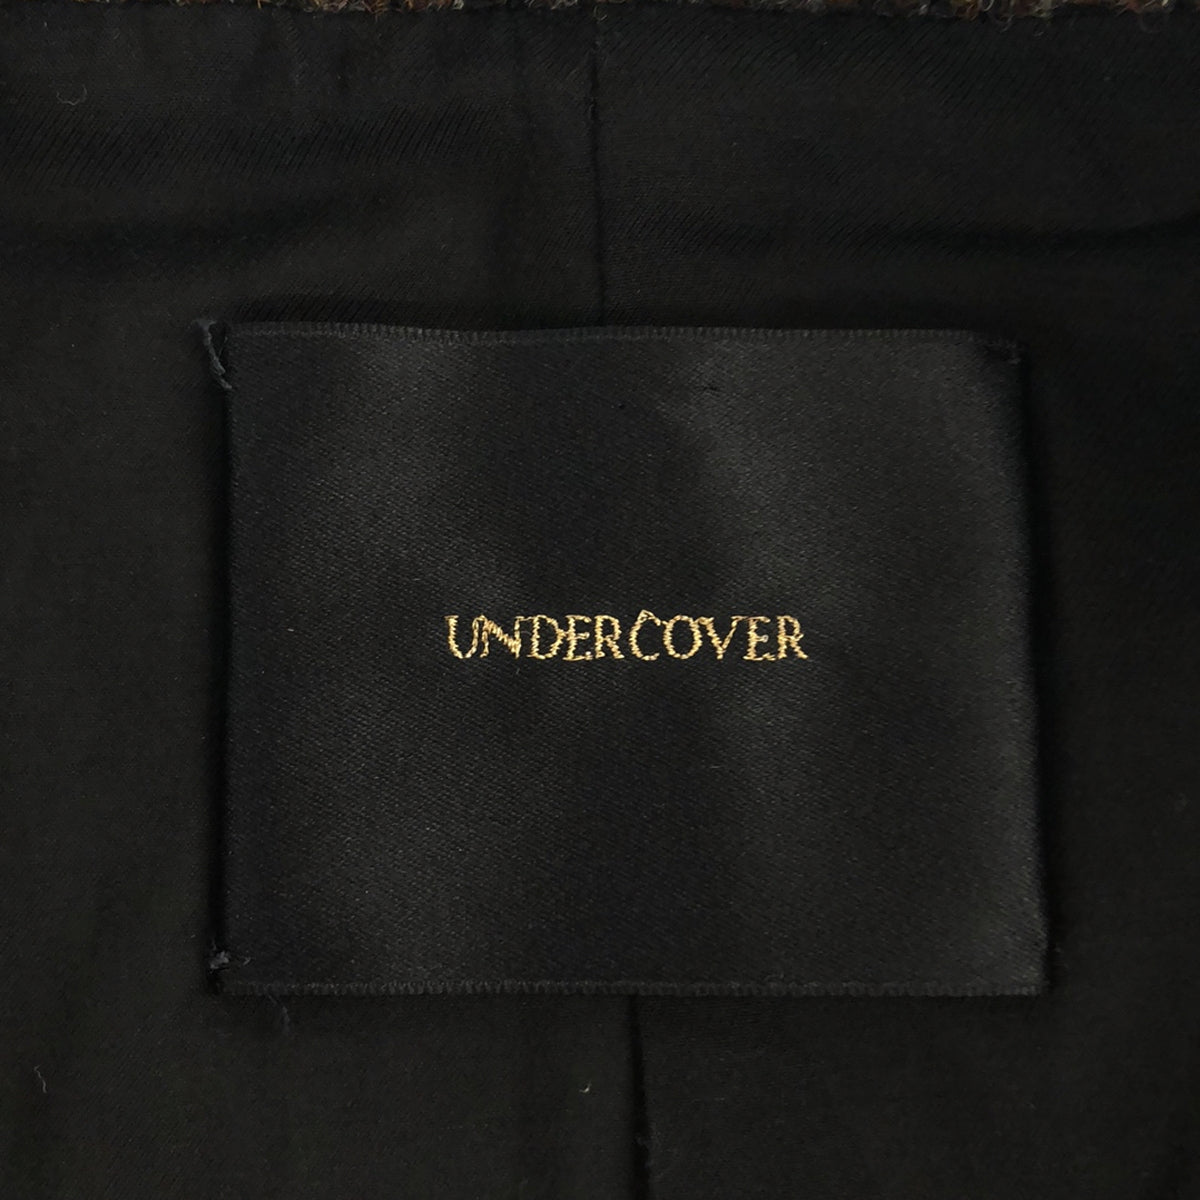 UNDER COVER / アンダーカバー | ウール 千鳥格子柄 プリマロフト ステンカラーコート | 3 | メンズ